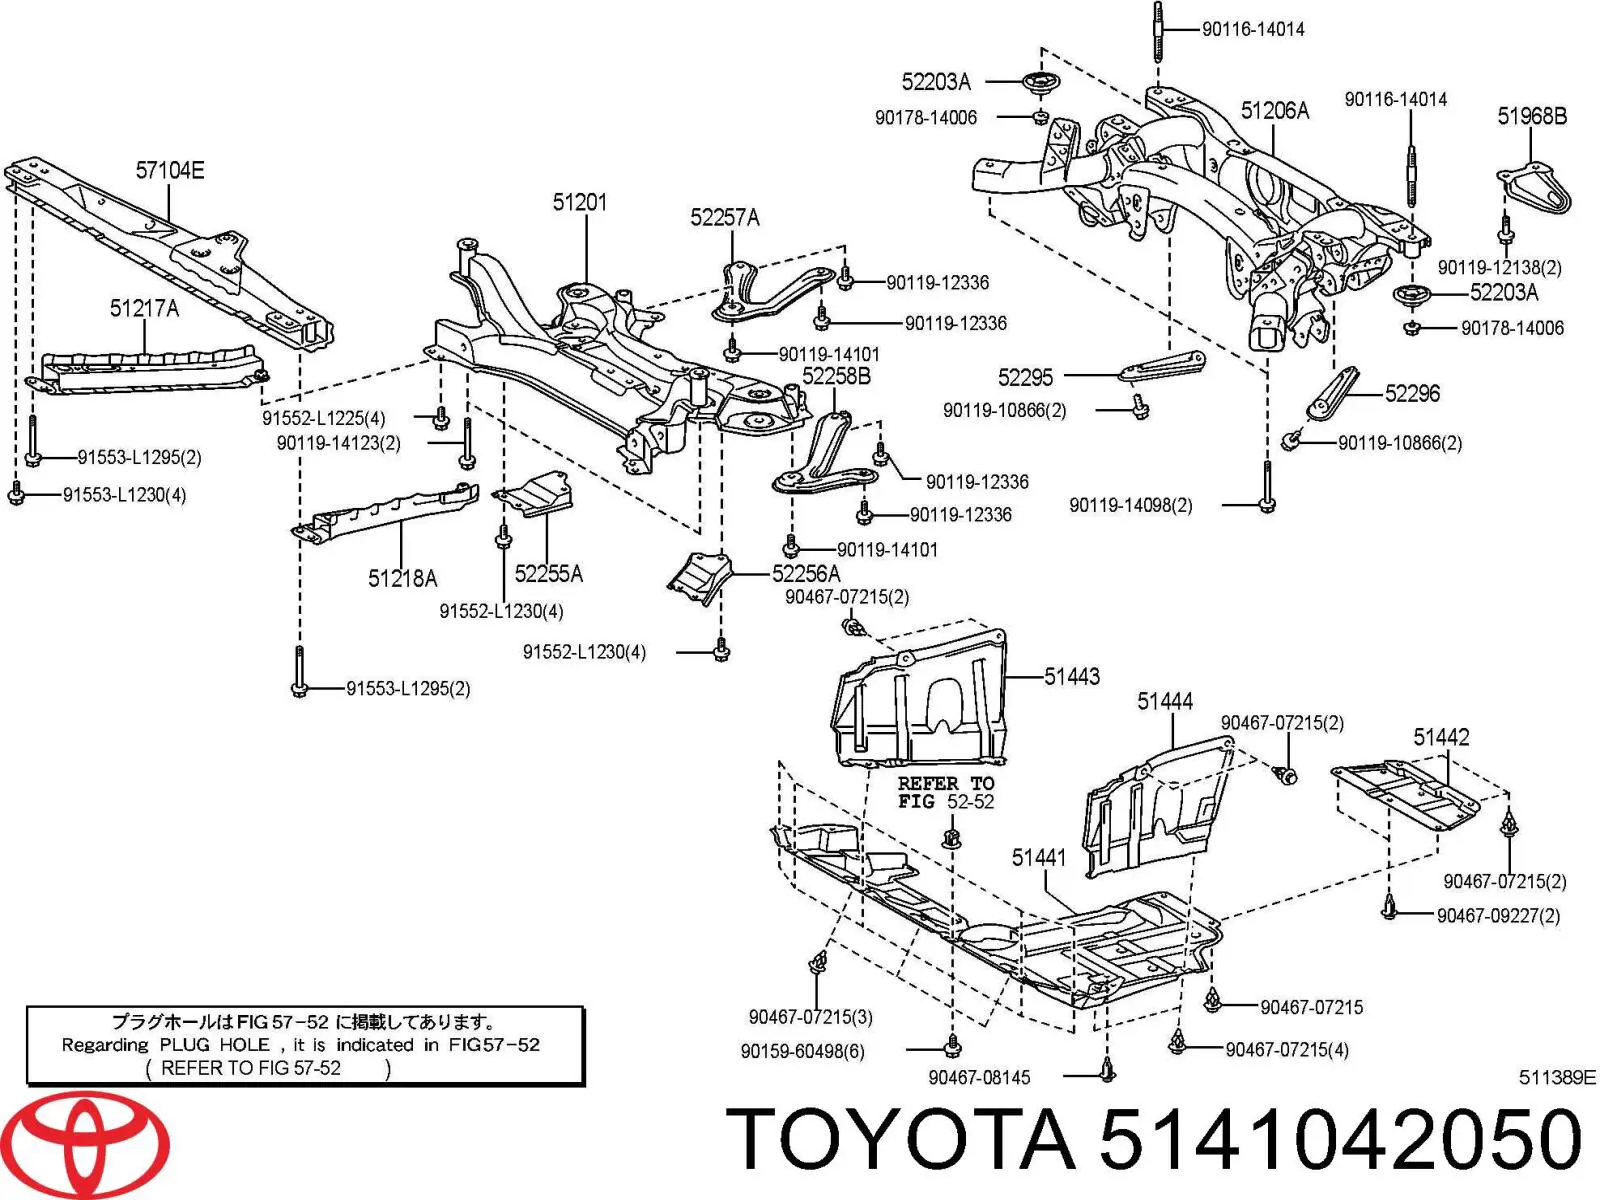 5141042050 Toyota защита двигателя, поддона (моторного отсека)